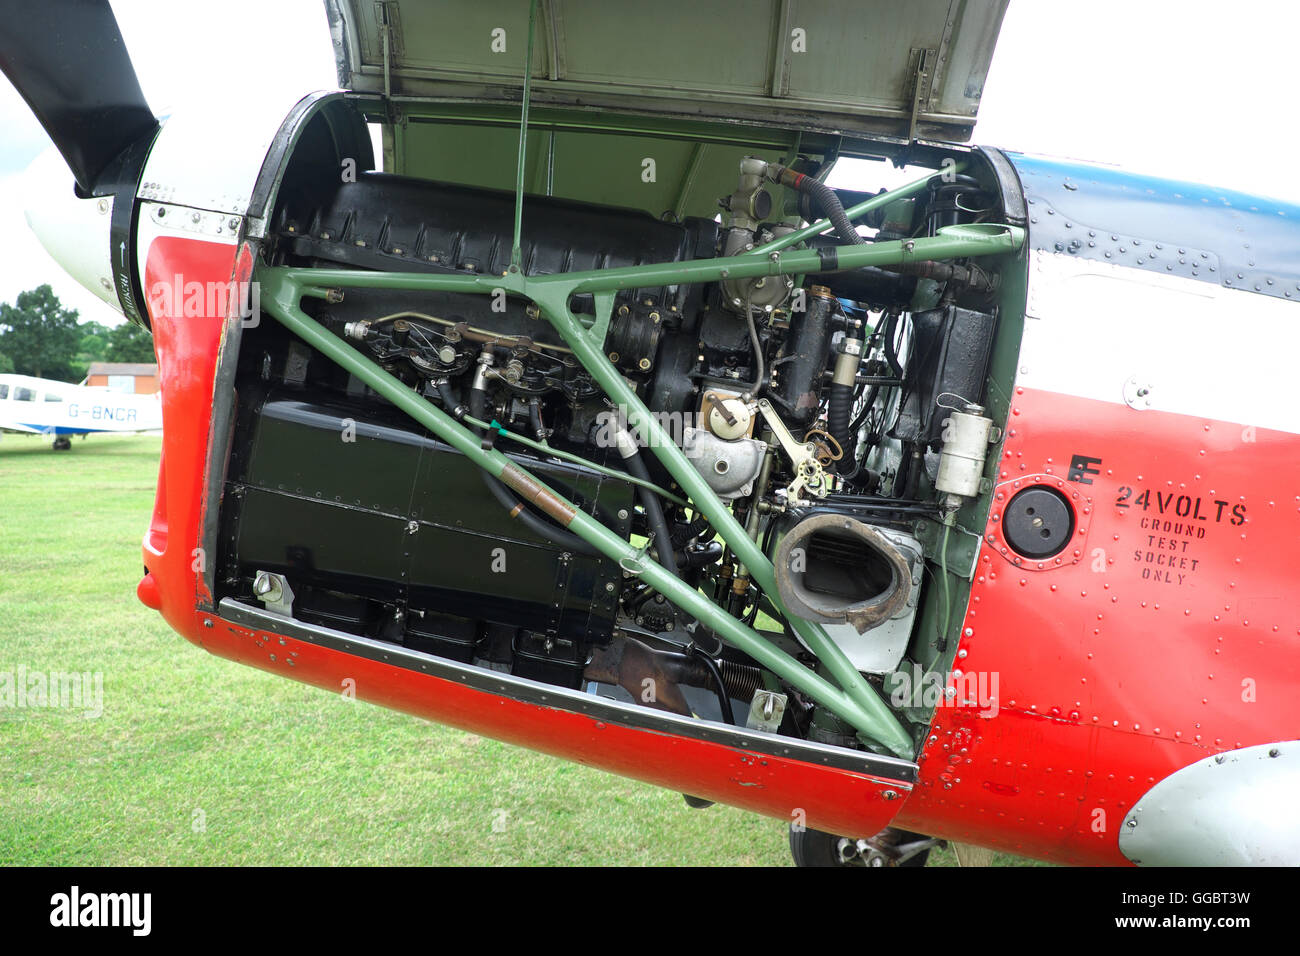 Die de Havilland Gipsy großen Motor gesehen unter die Verkleidungen eines DHC-1 Chipmunk-Flugzeugs in den 1950er Jahren gebaut. Stockfoto